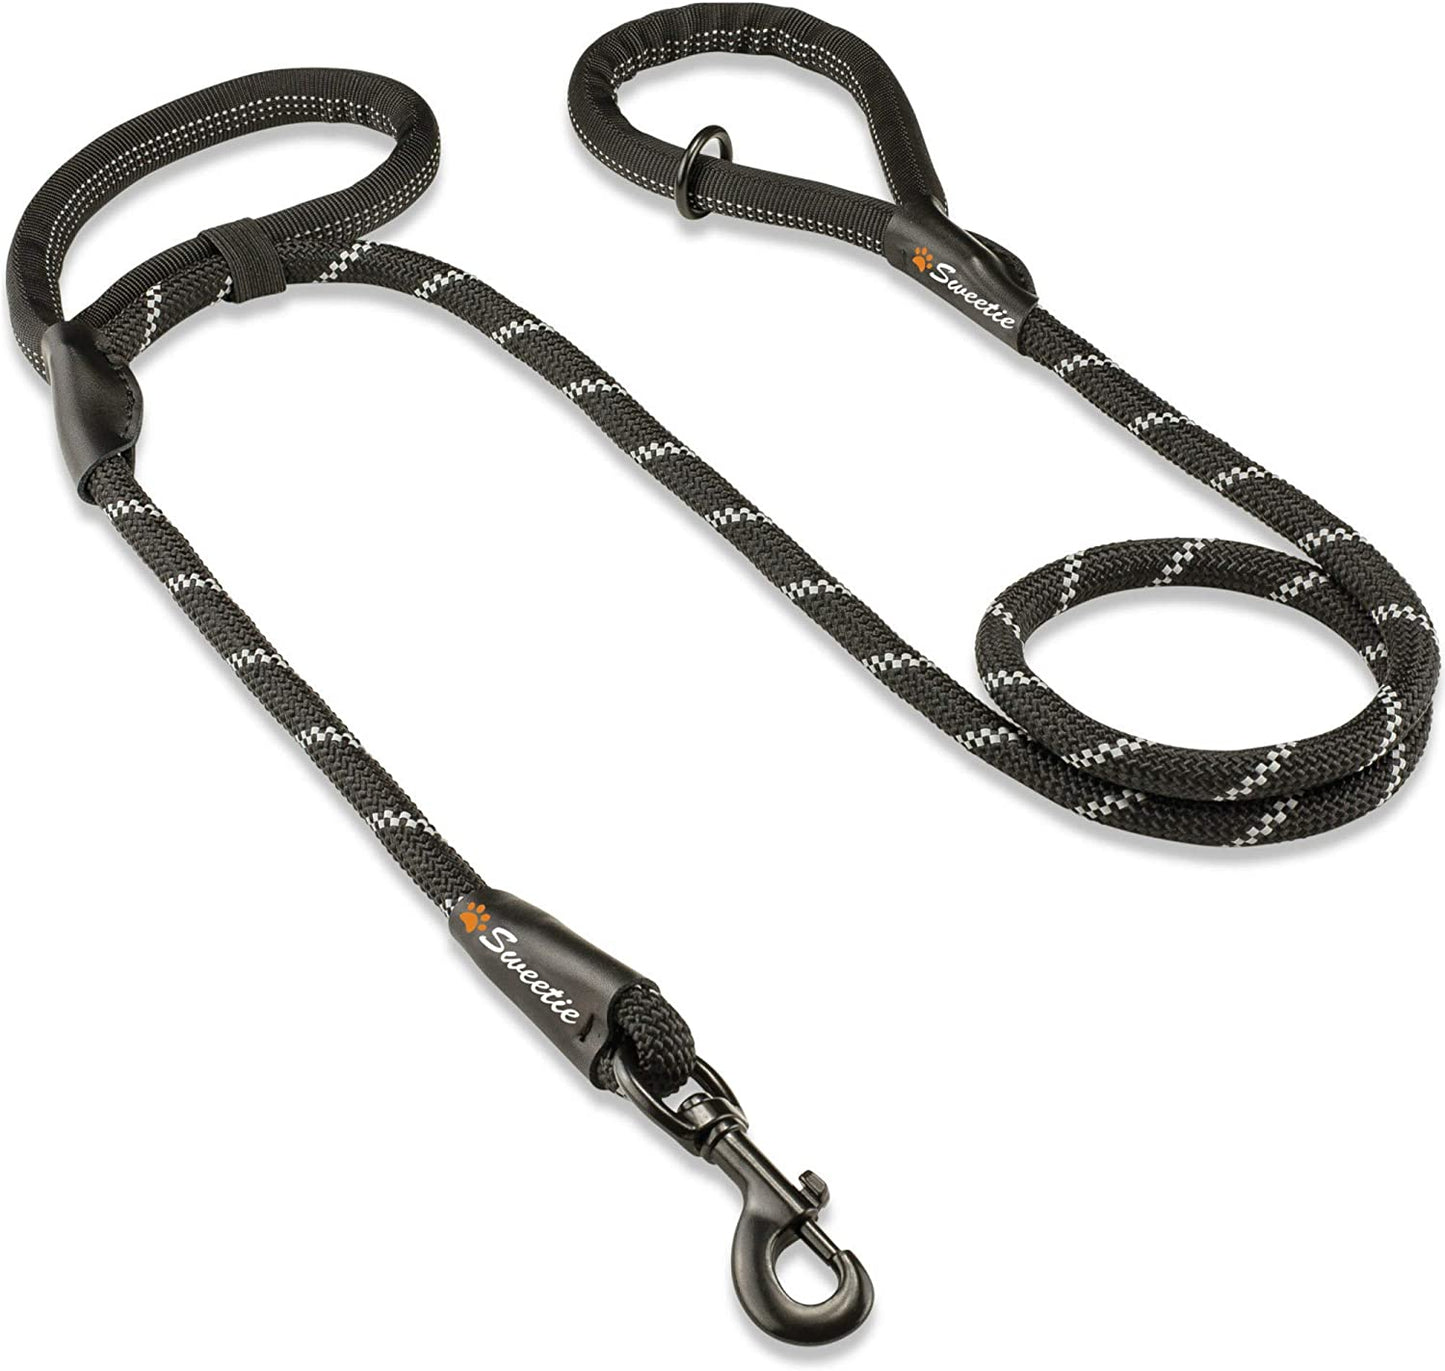 Sweetie Rope Dog Lead - Design inovador com duas alças acolchoadas